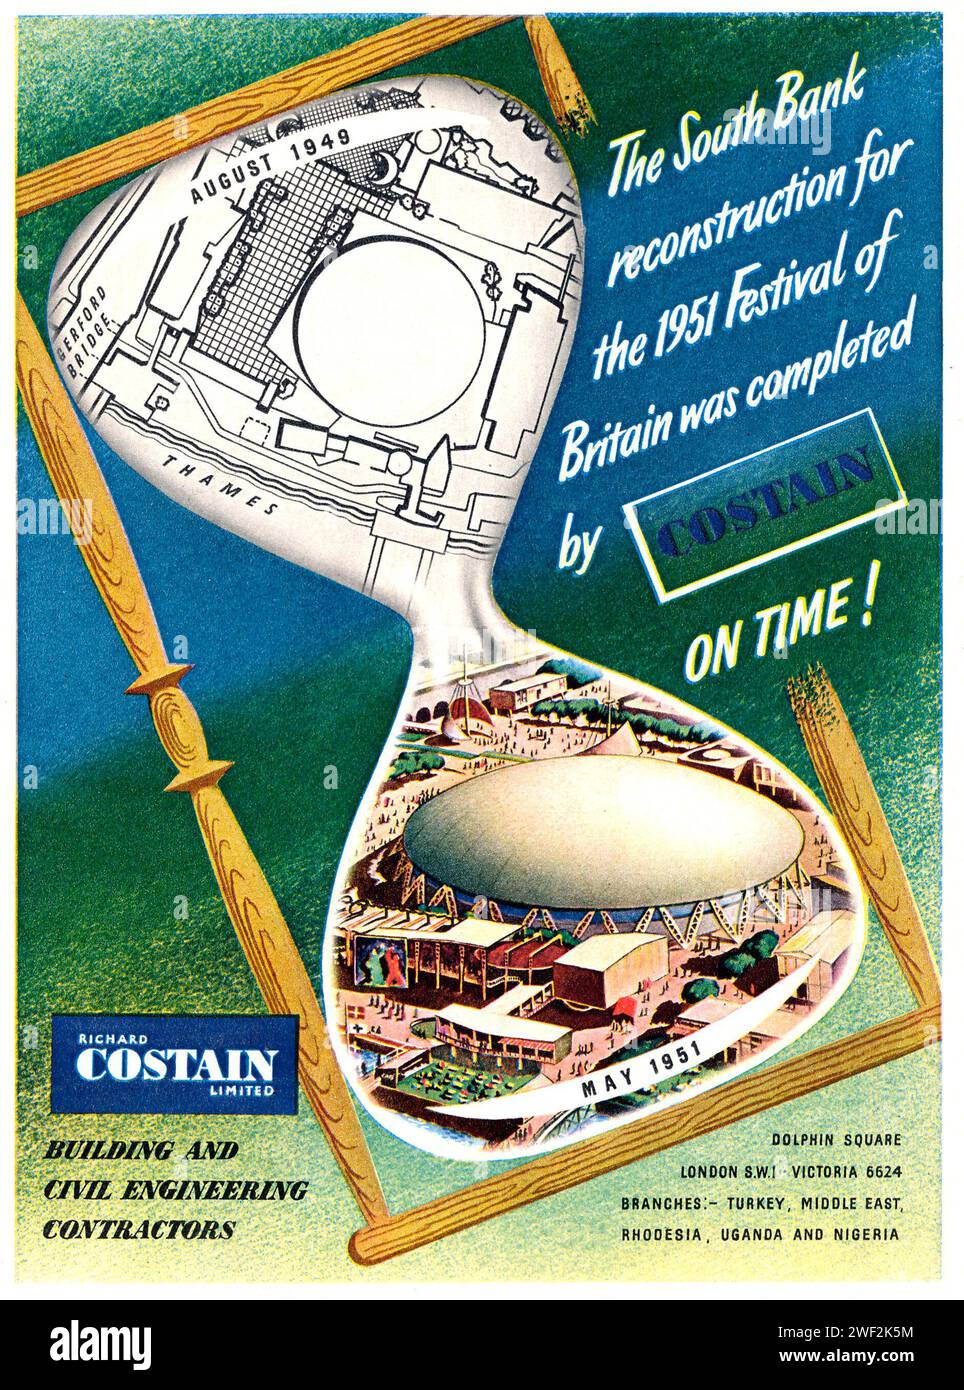 Publicité pour la construction de Costain dans le programme d'exposition Southbank du Festival de Grande-Bretagne, 1951, Costrain était l'entrepreneur principal pour la construction de l'exposition Banque D'Images